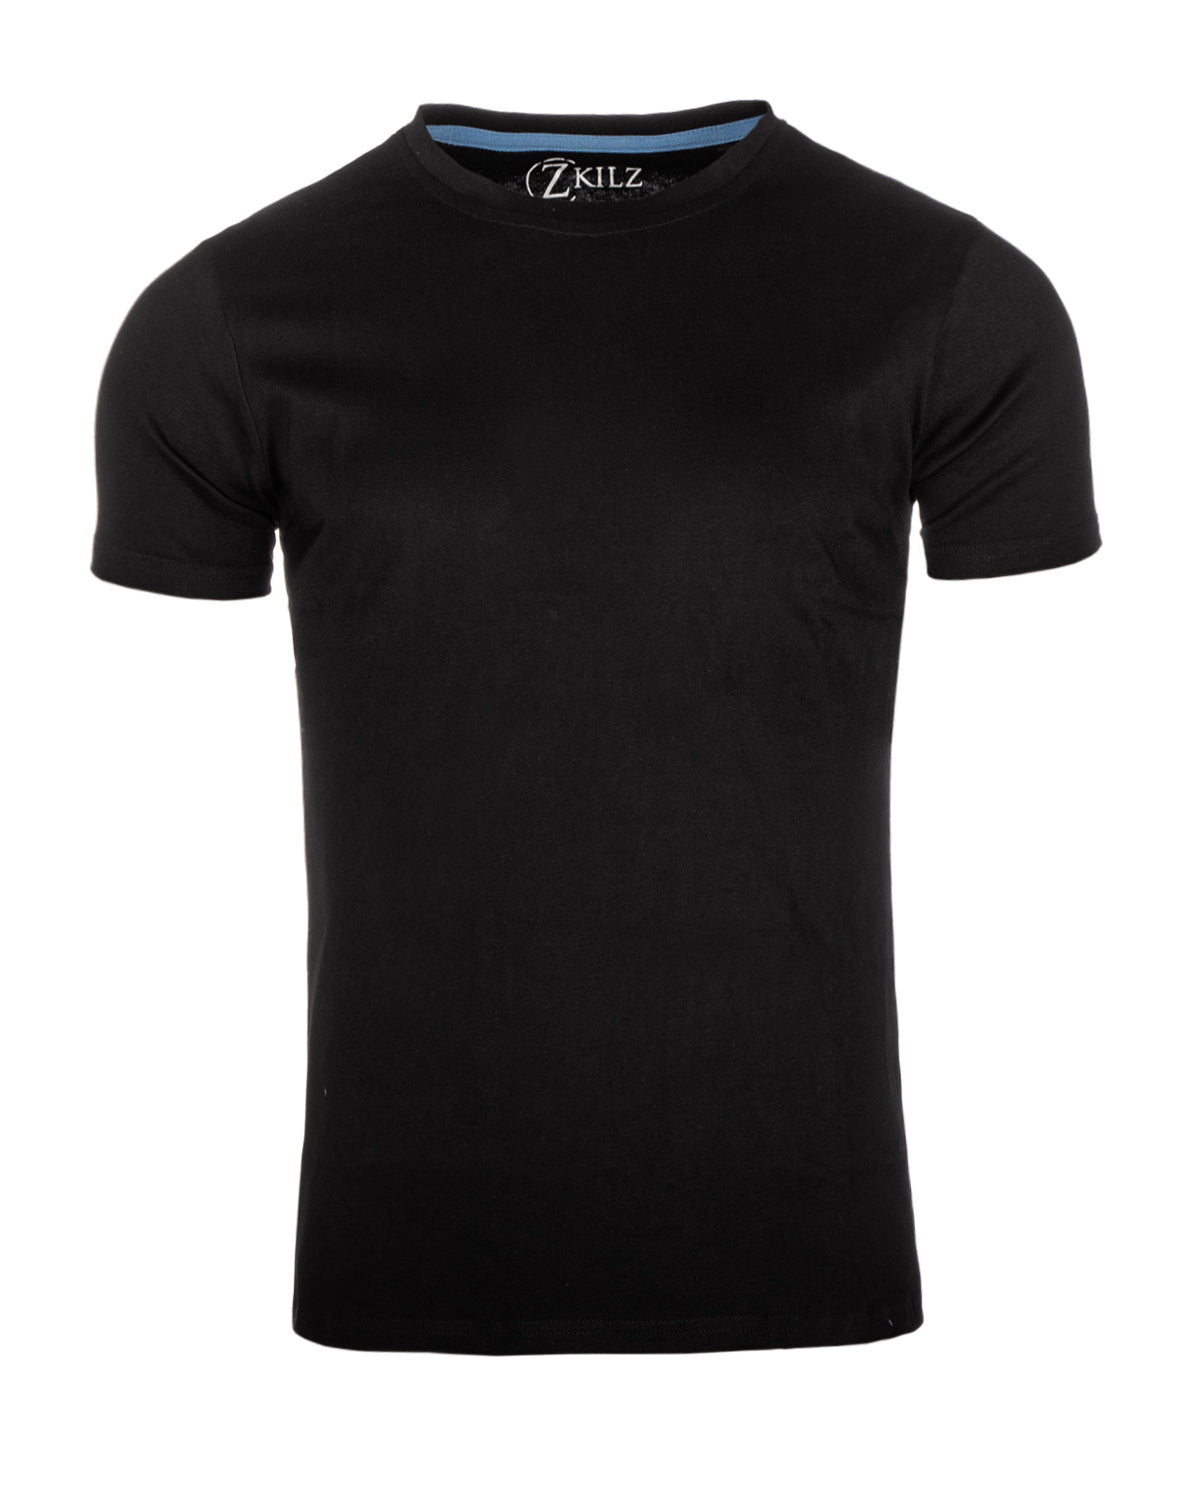 Zkilz Eco Clothing Luomupuuvilla t-paita - Musta